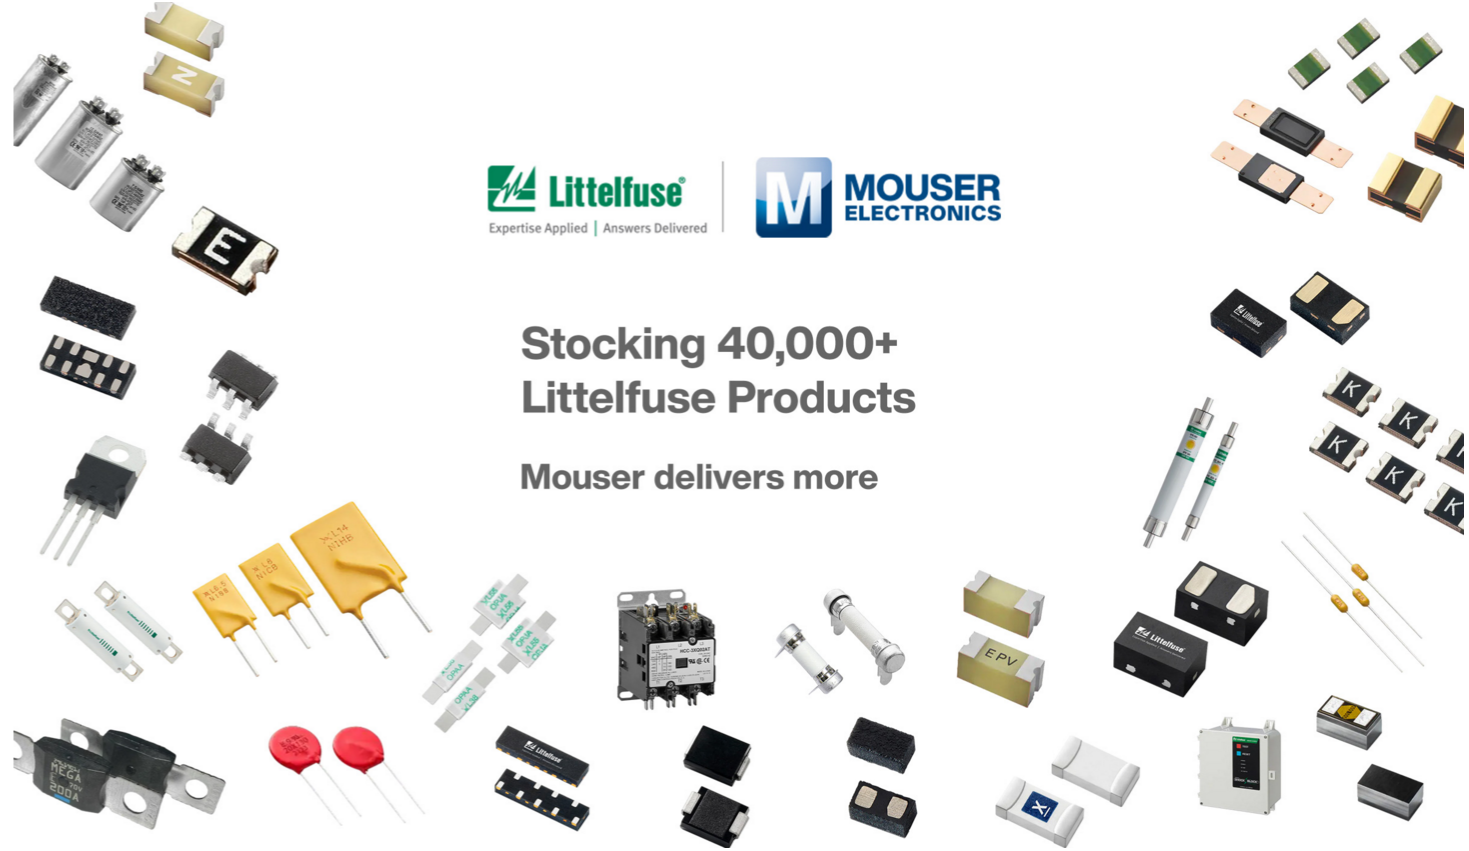 贸泽电子提供超过41,000种Littelfuse元器件 新品上线等你来挑